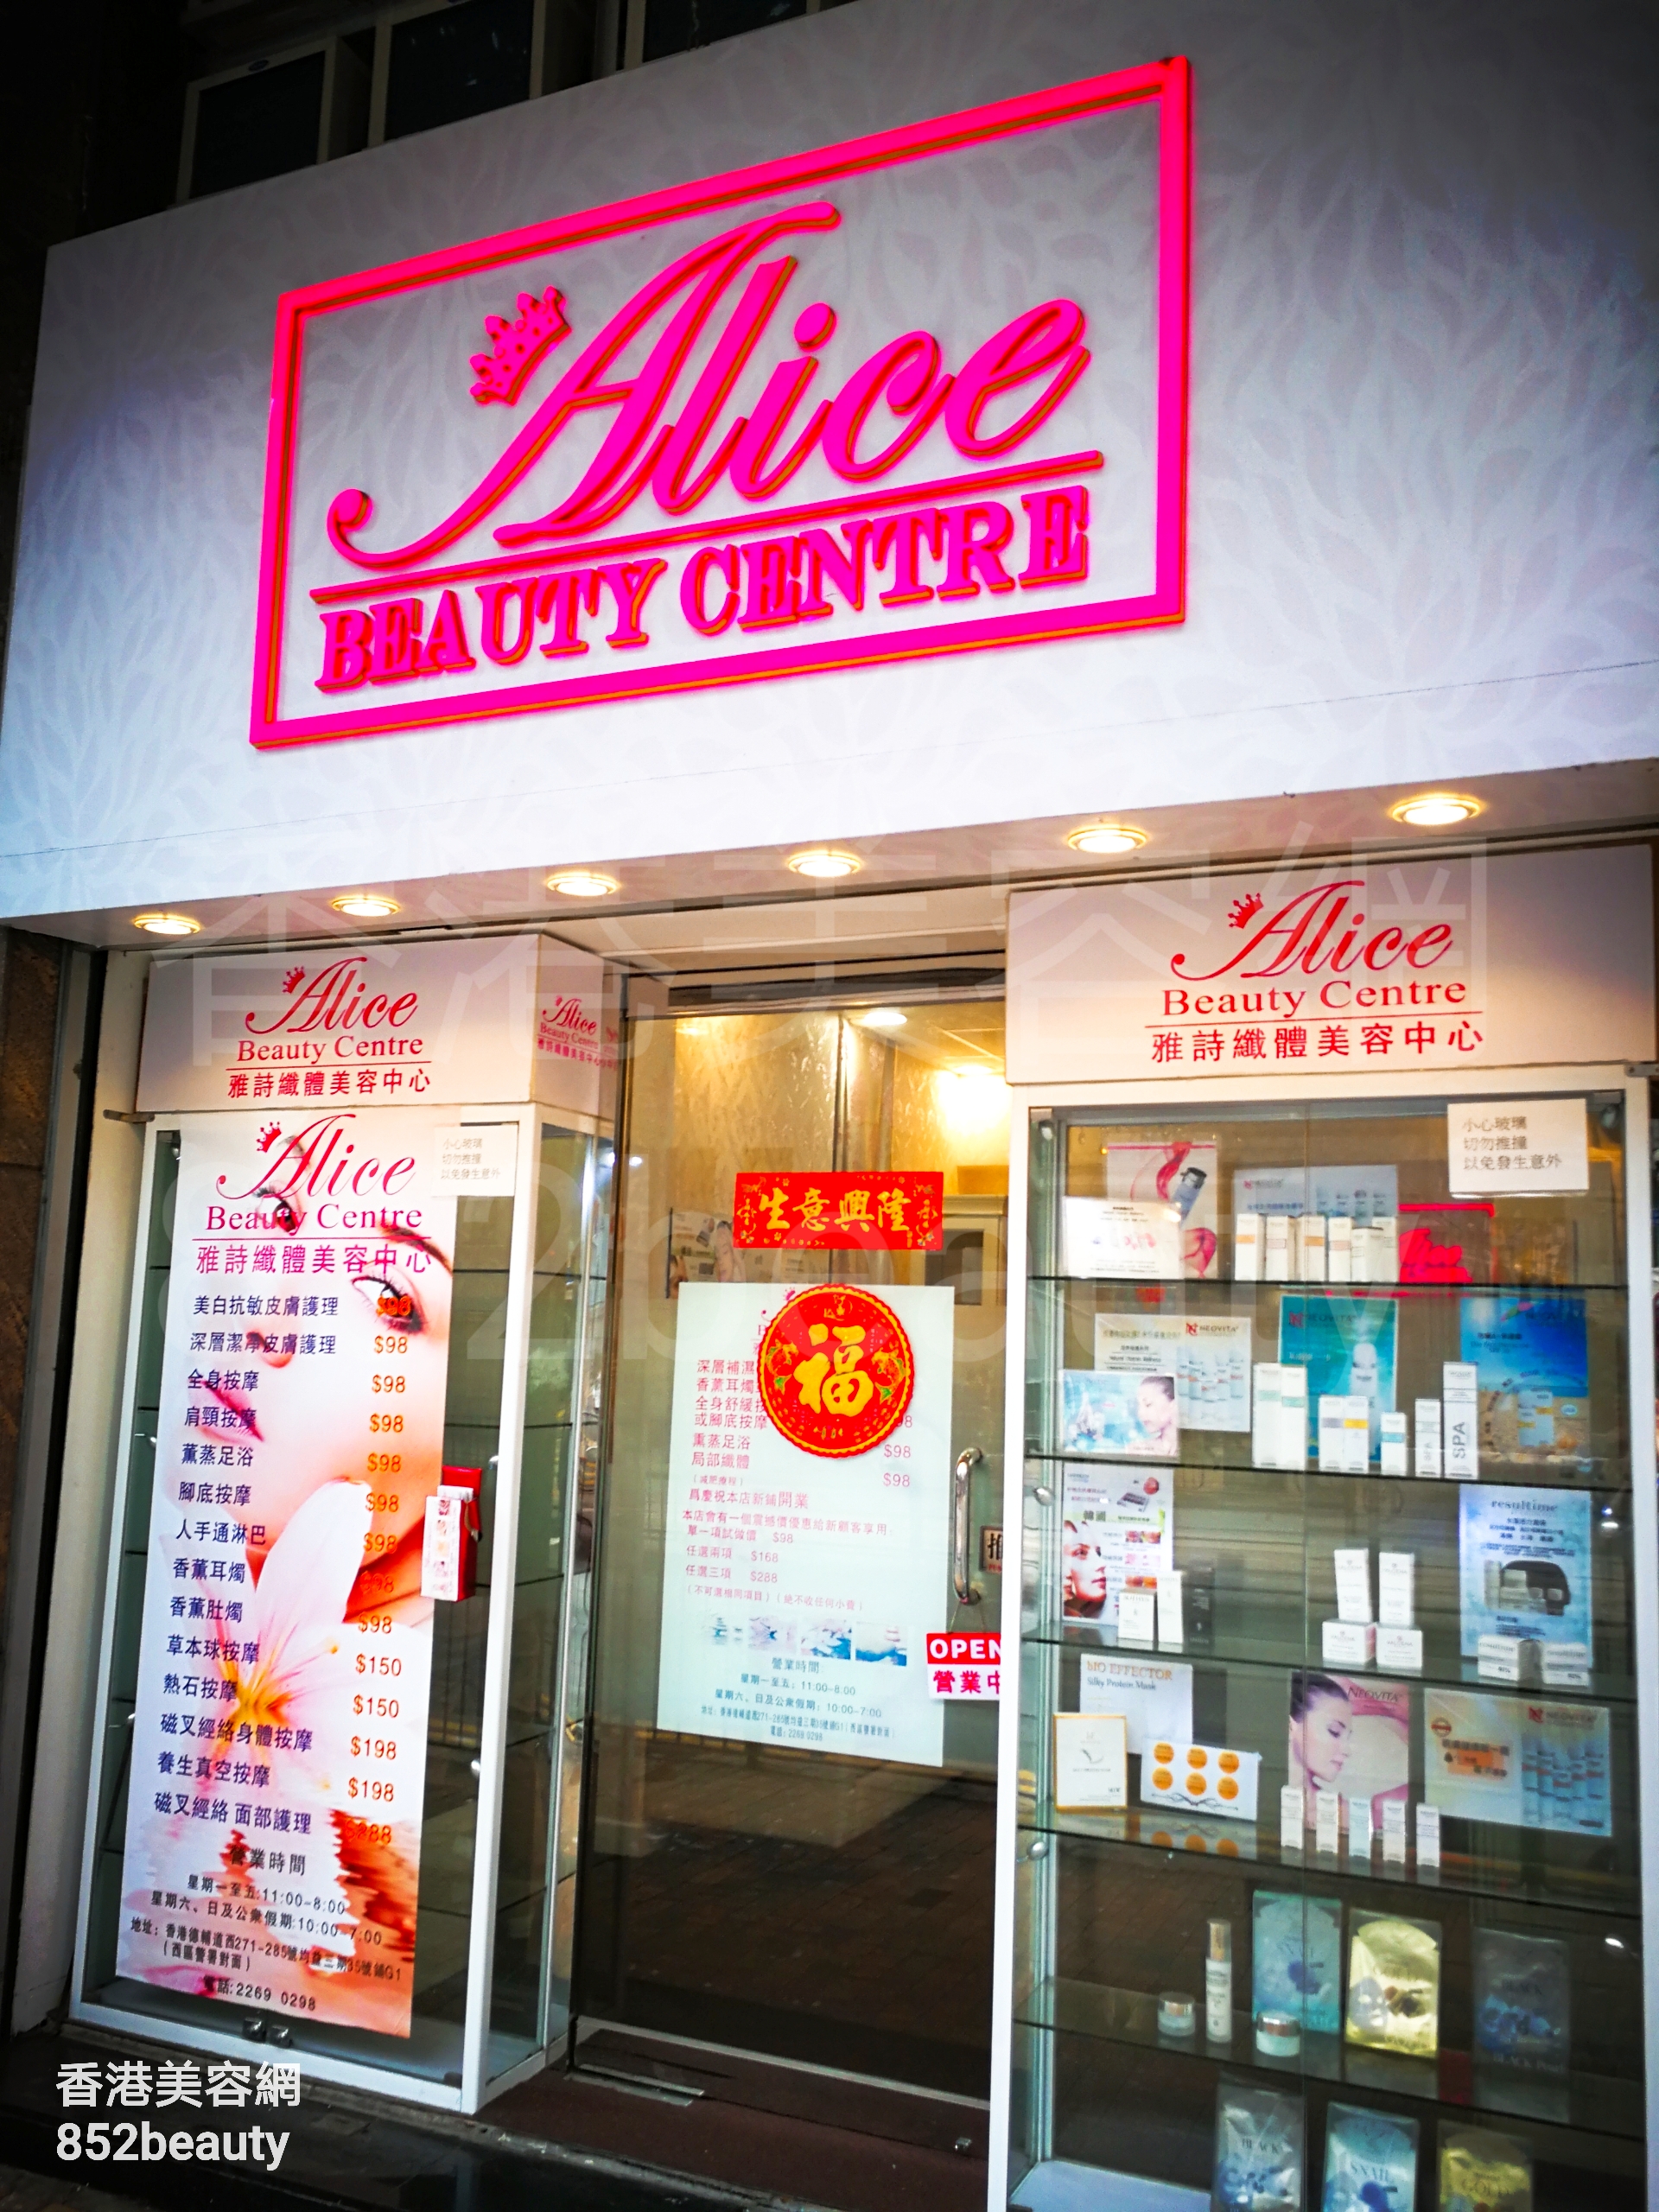 Facial Care: Alice beauty centre 雅詩纖體美容中心 (西營盤店)